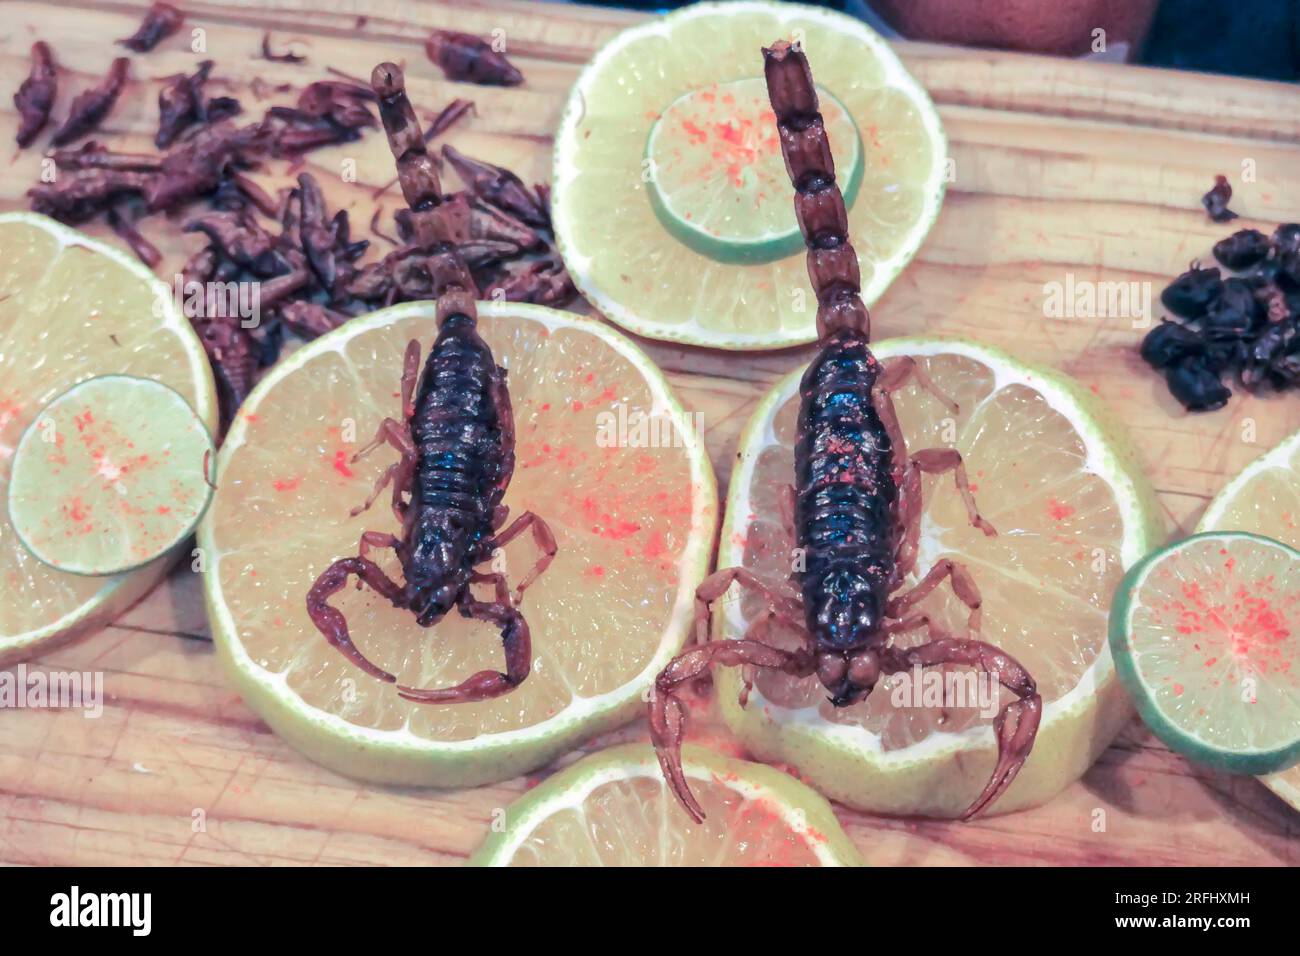 Skorpione und andere Insekten werden im mexikanischen Restaurant serviert Stockfoto